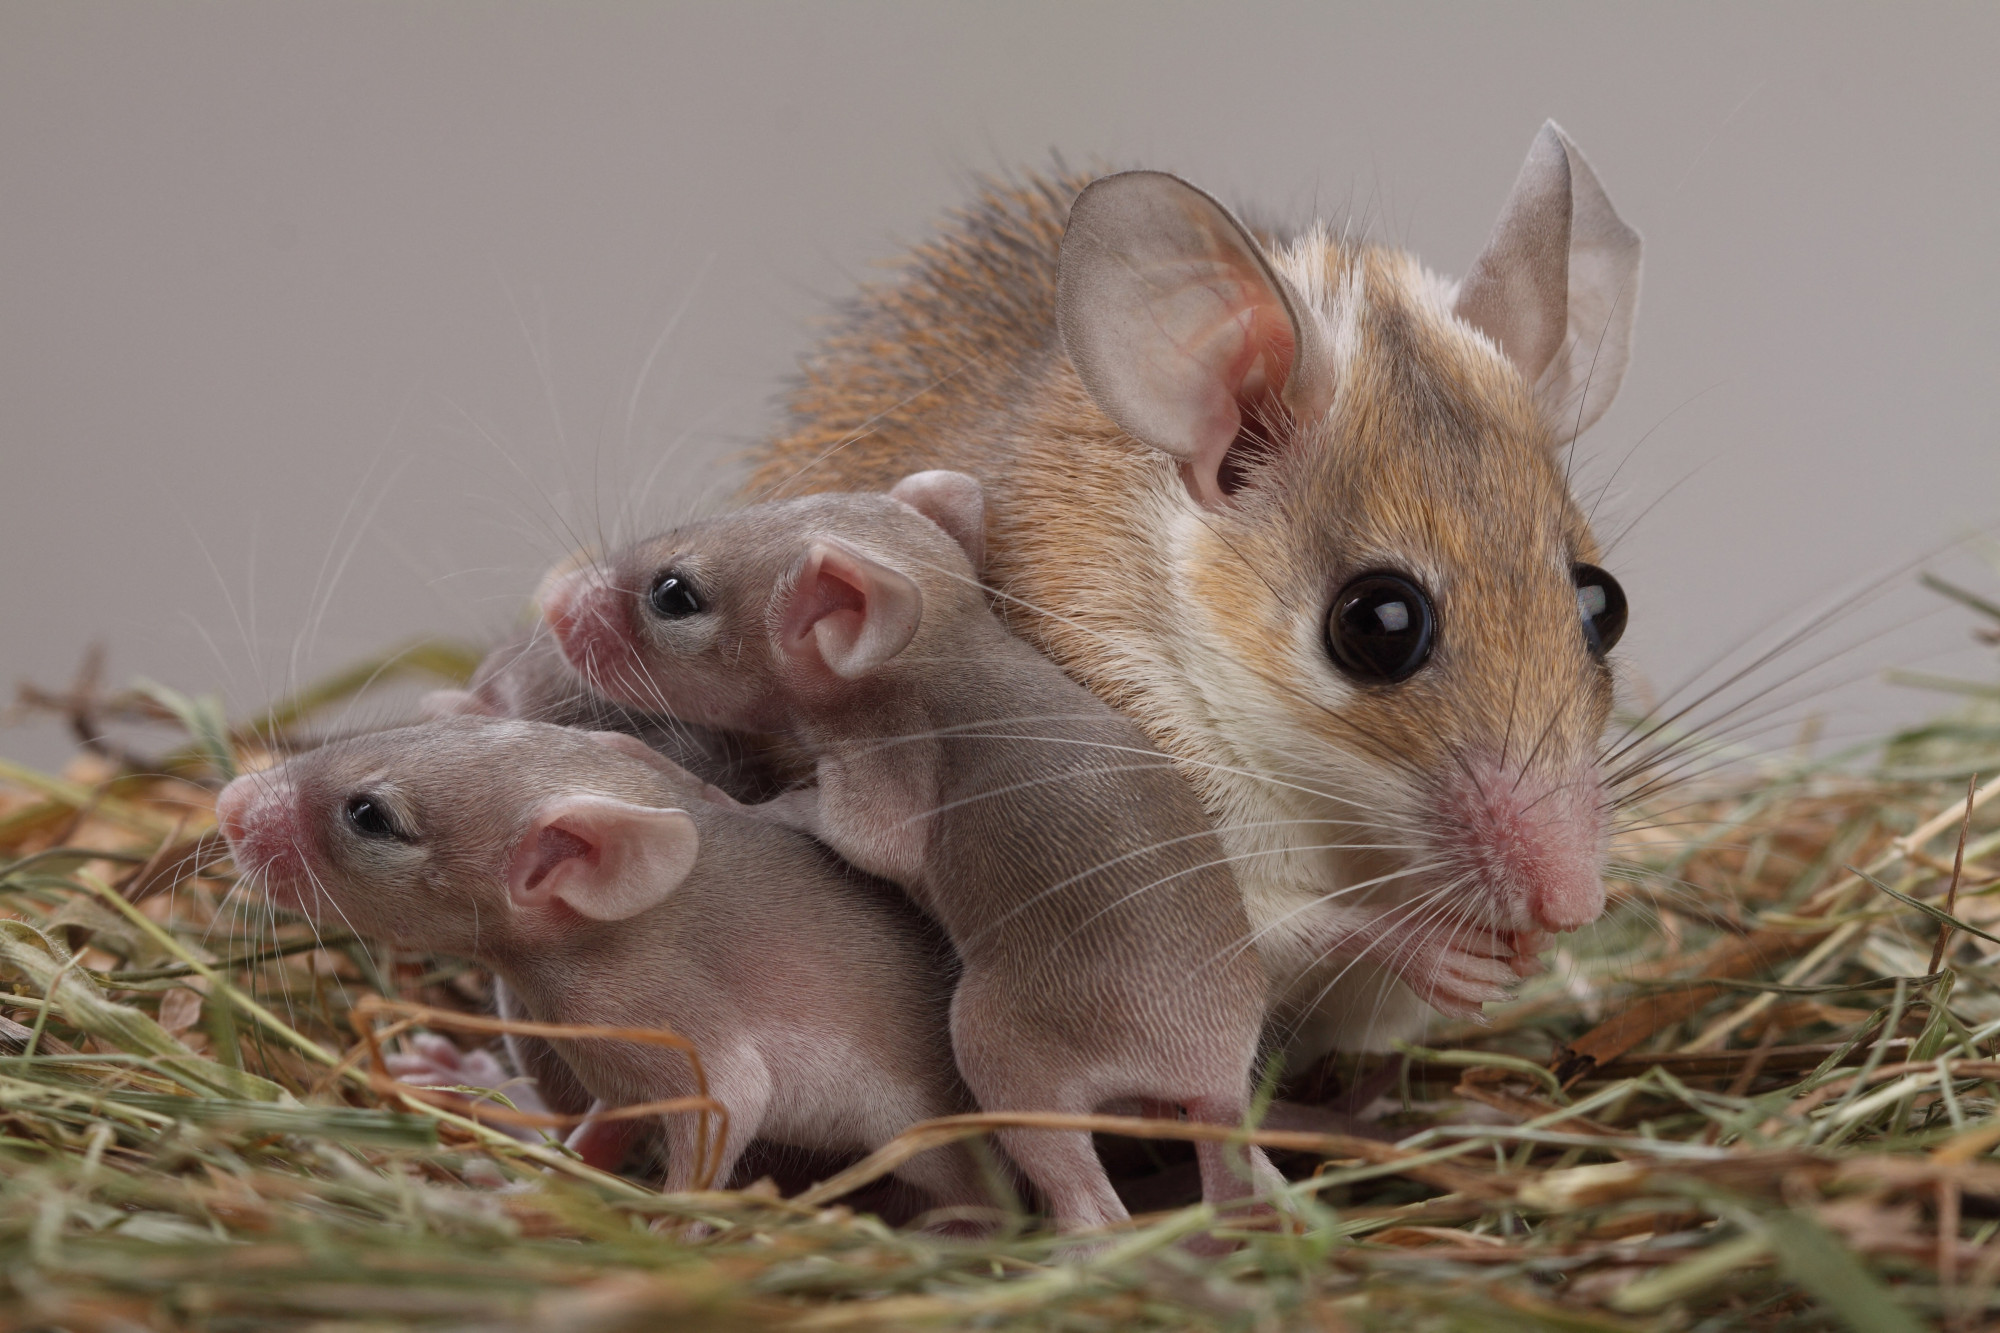 Azonosították az anya-gyermek kötődésért felelős agysejteket egerekben